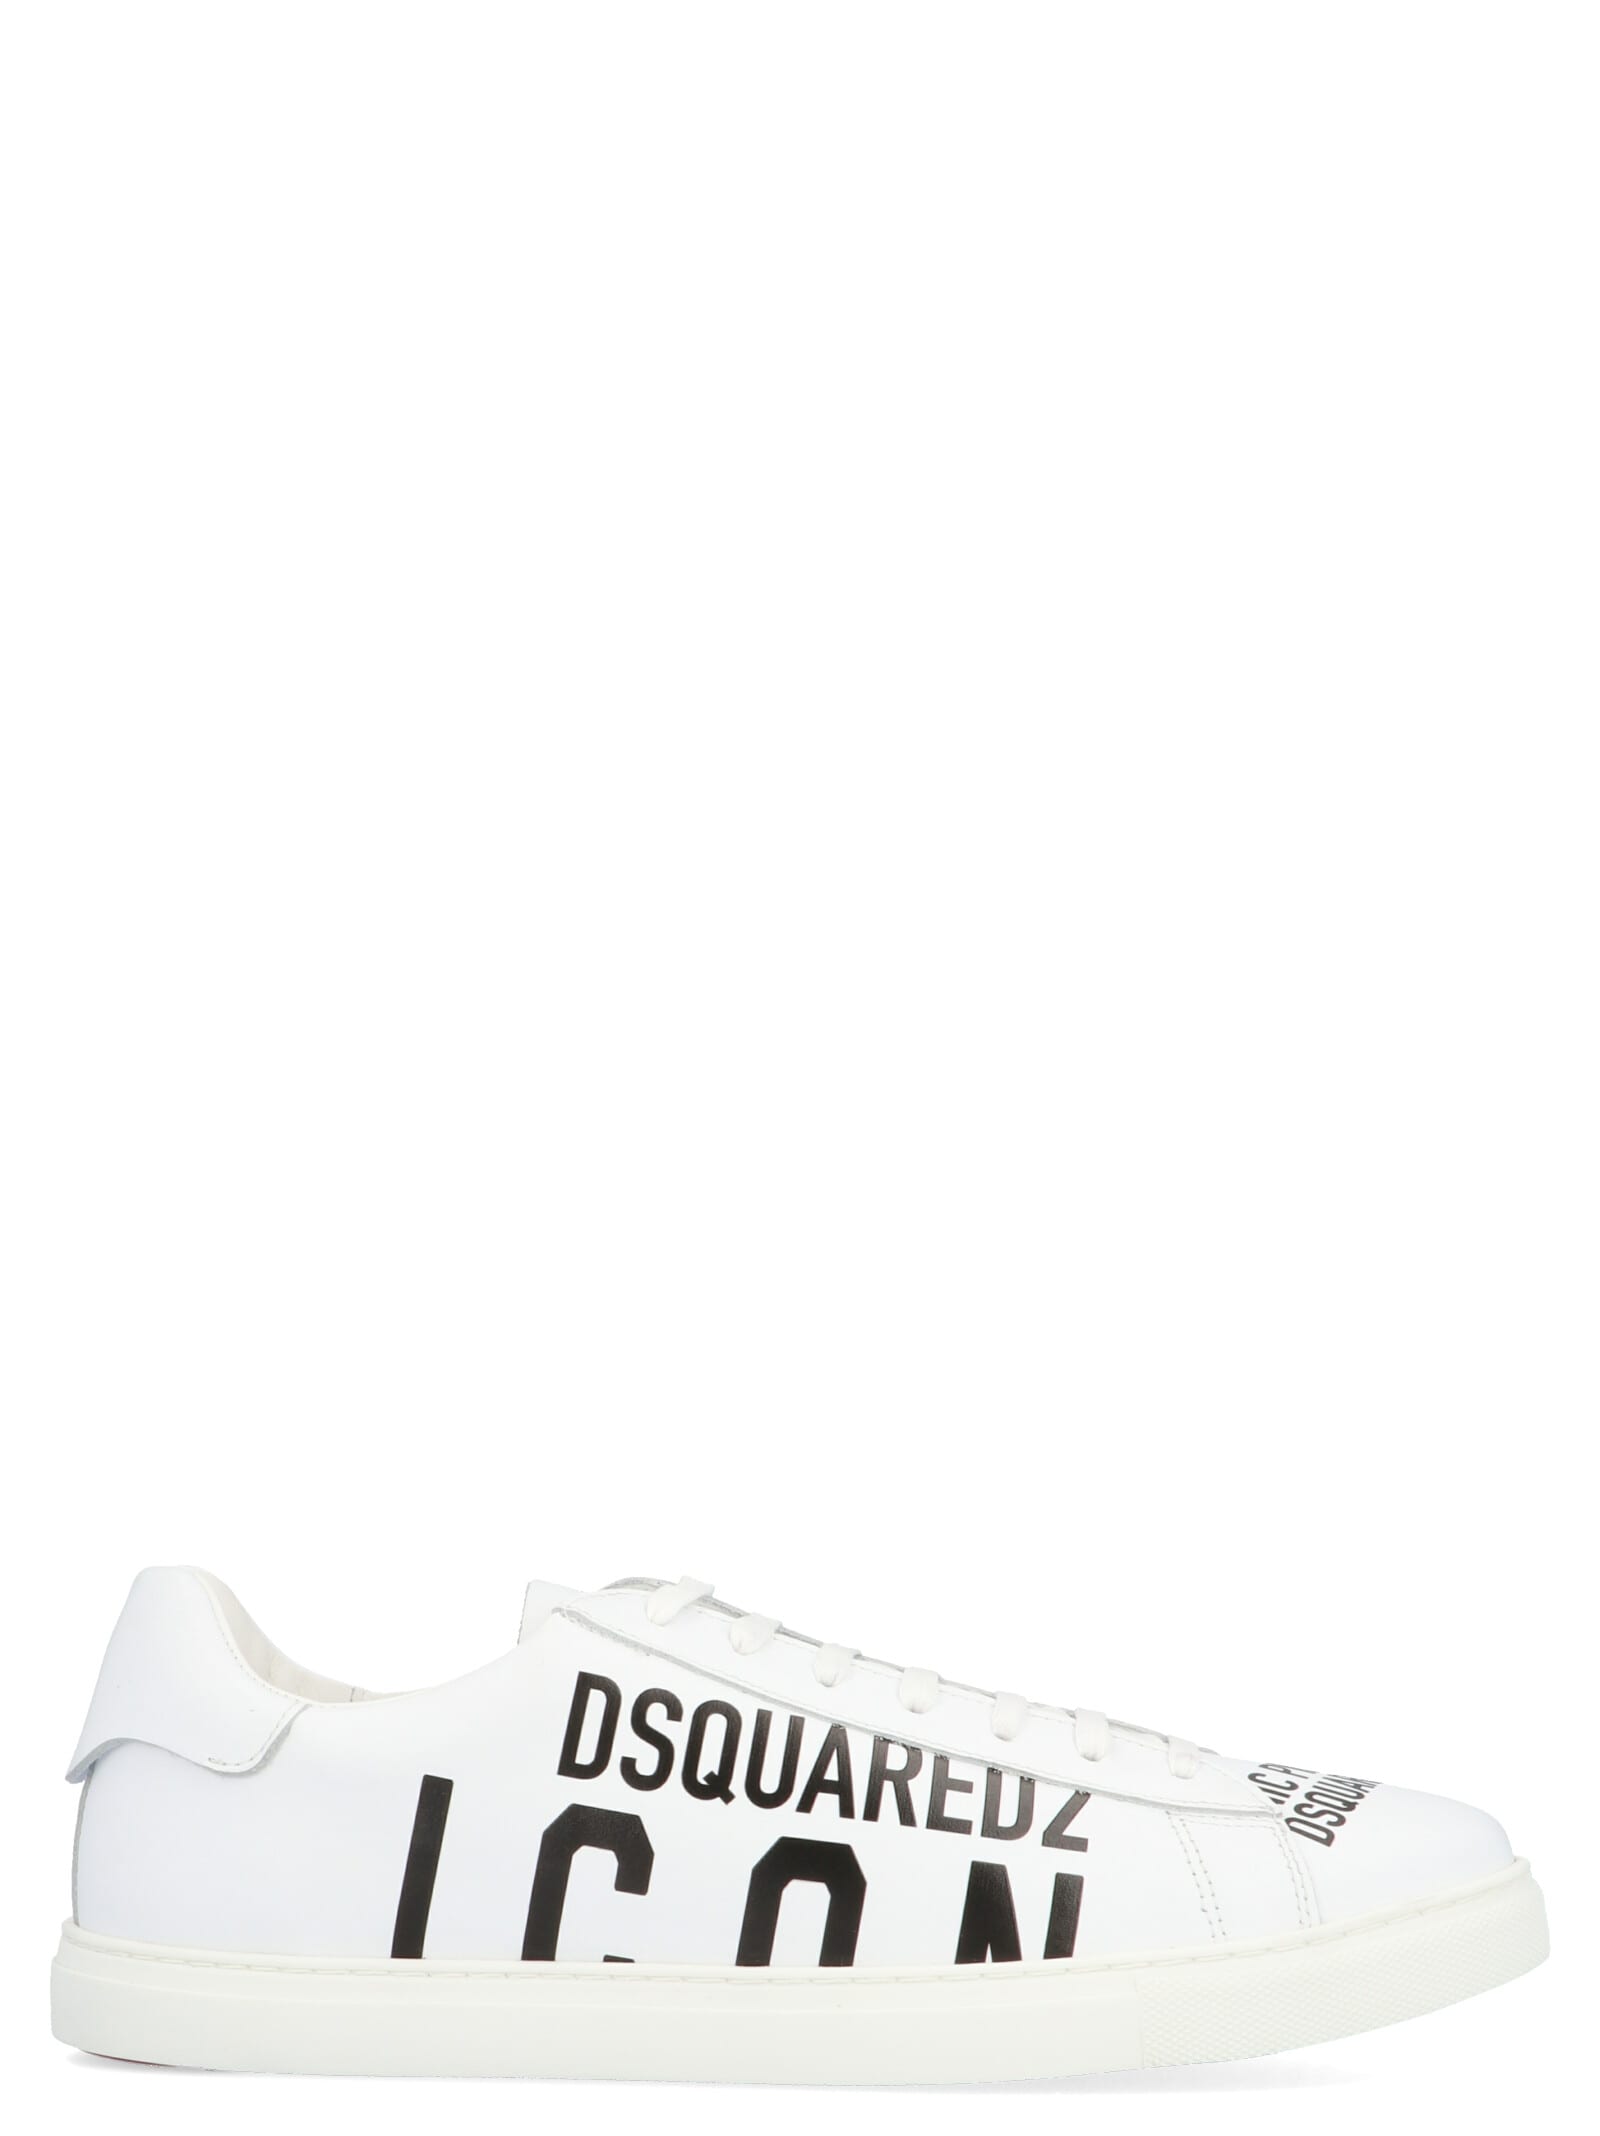 dsquared2 sale shoes